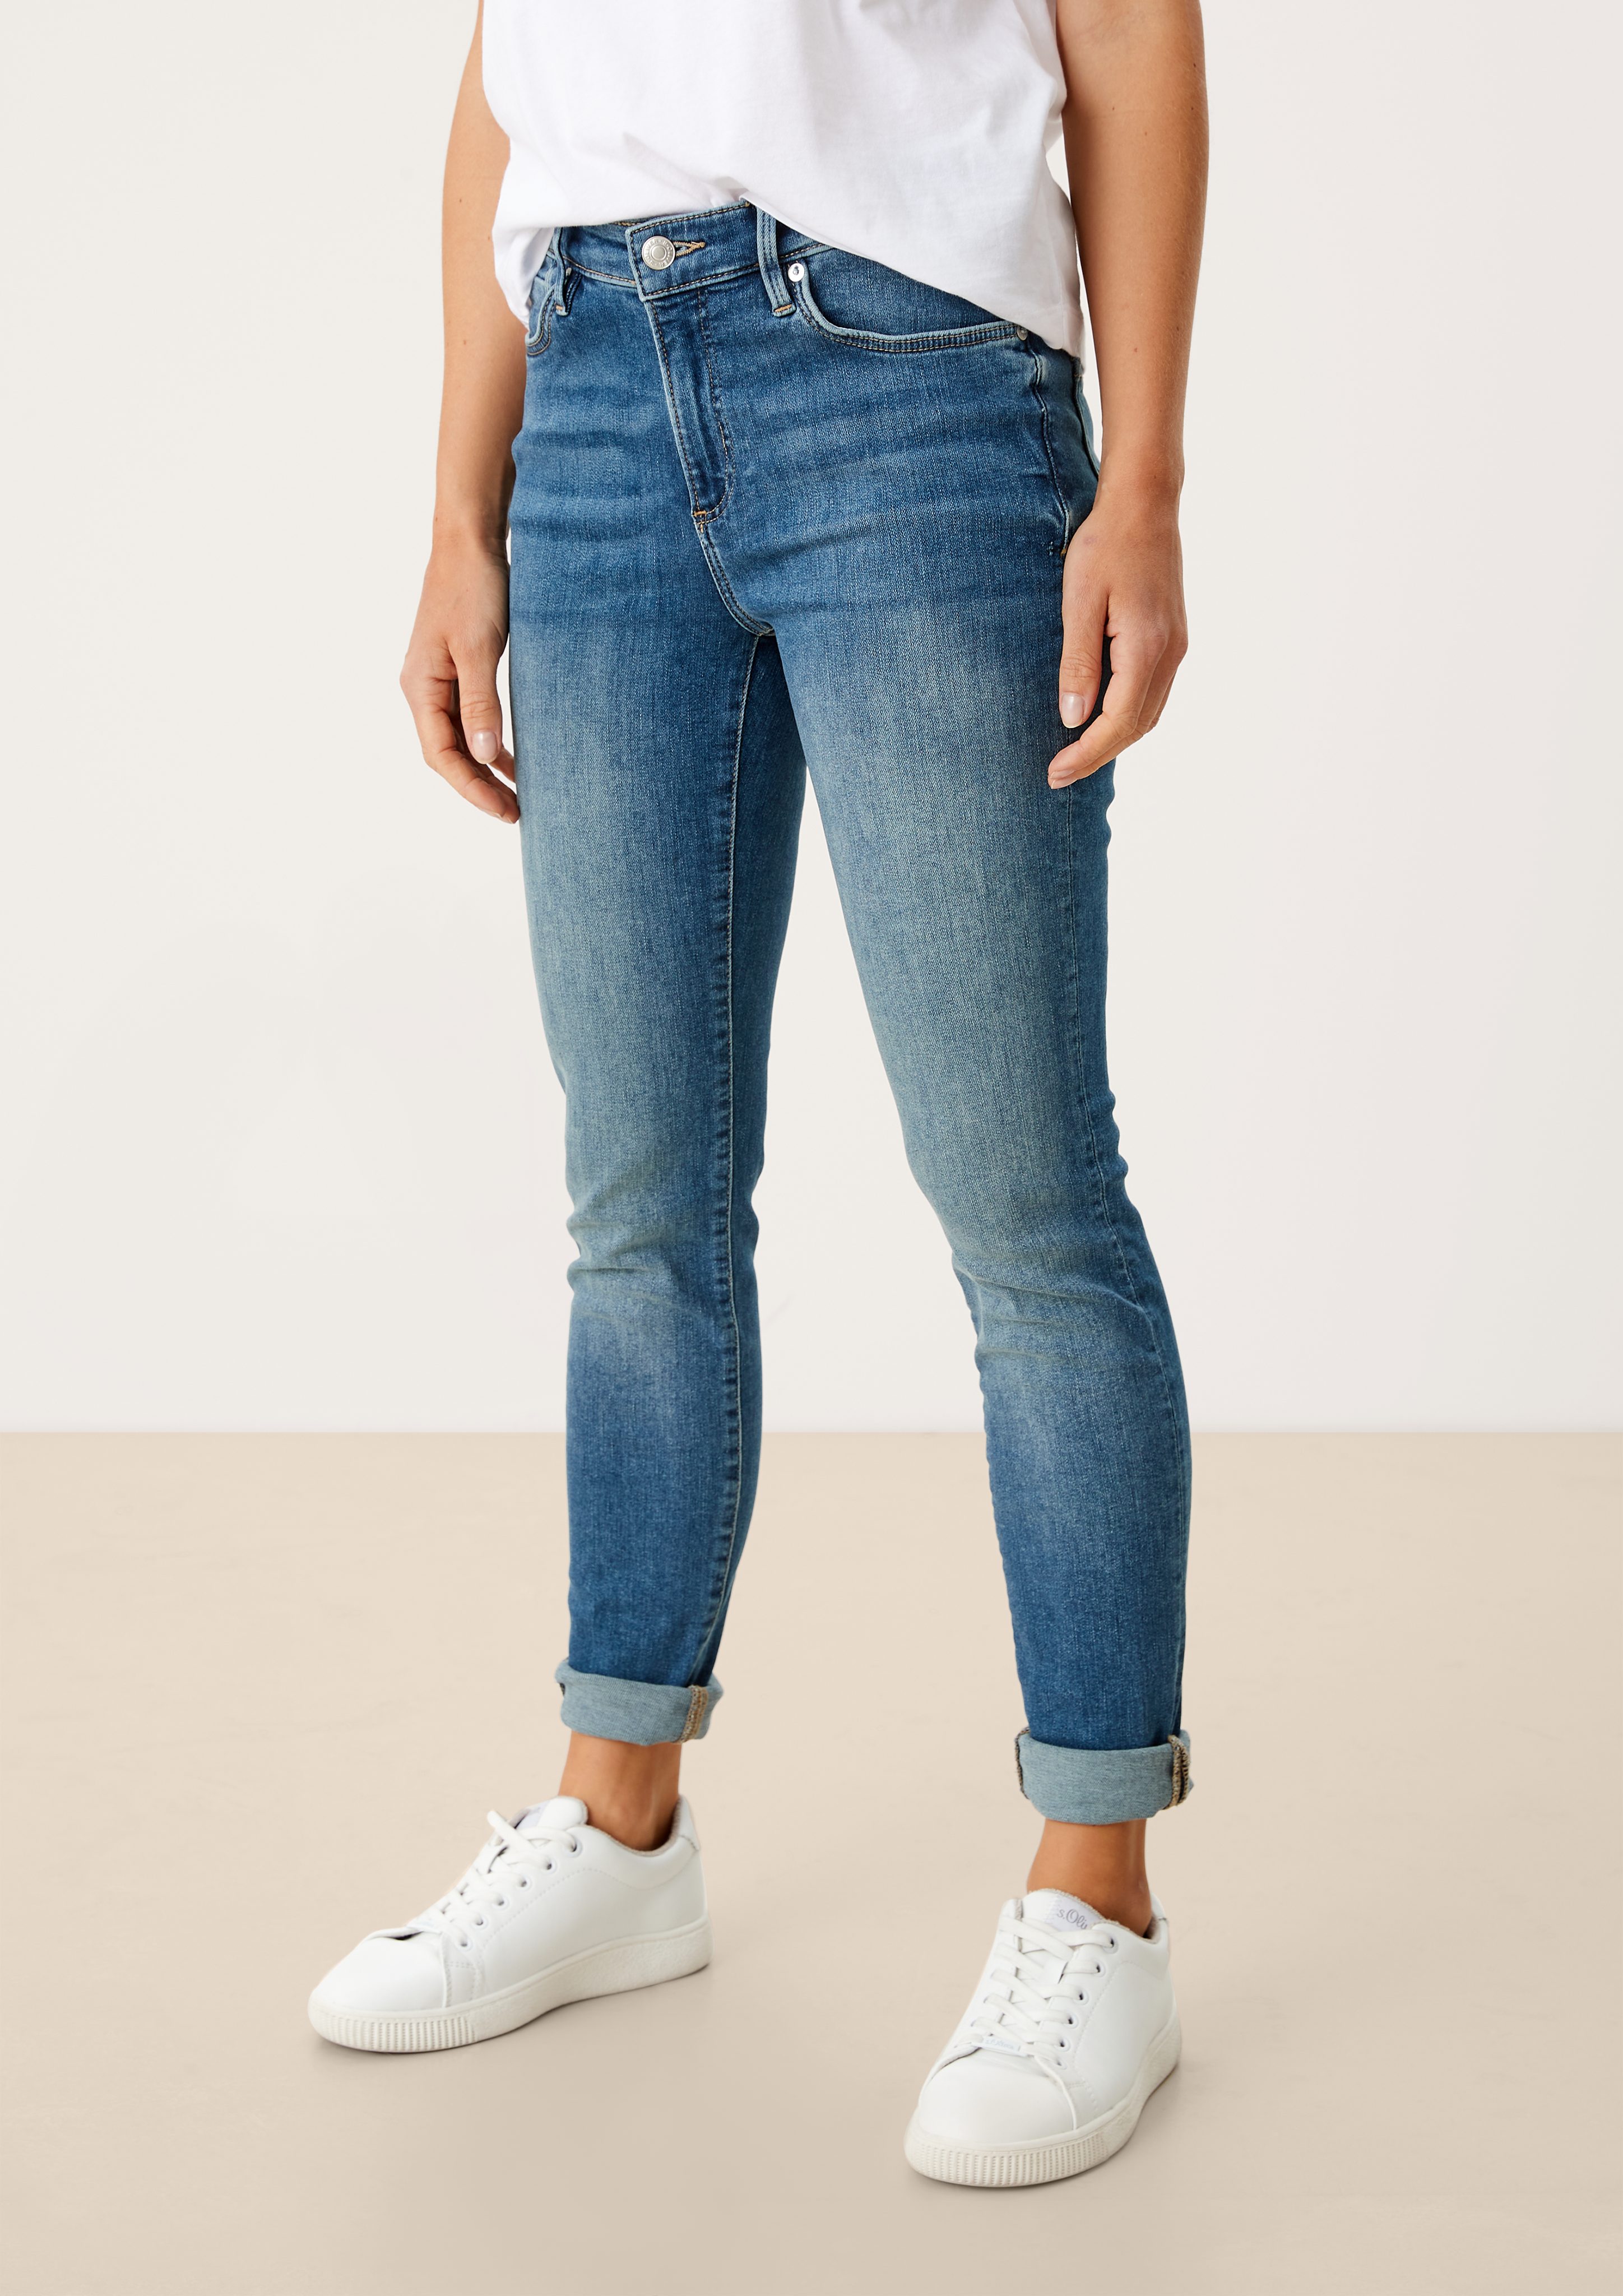 Mid / Skinny blue Jeans s.Oliver Skinny Fit Leg Leder-Patch, Izabell medium 5-Pocket-Jeans Waschung / Rise /